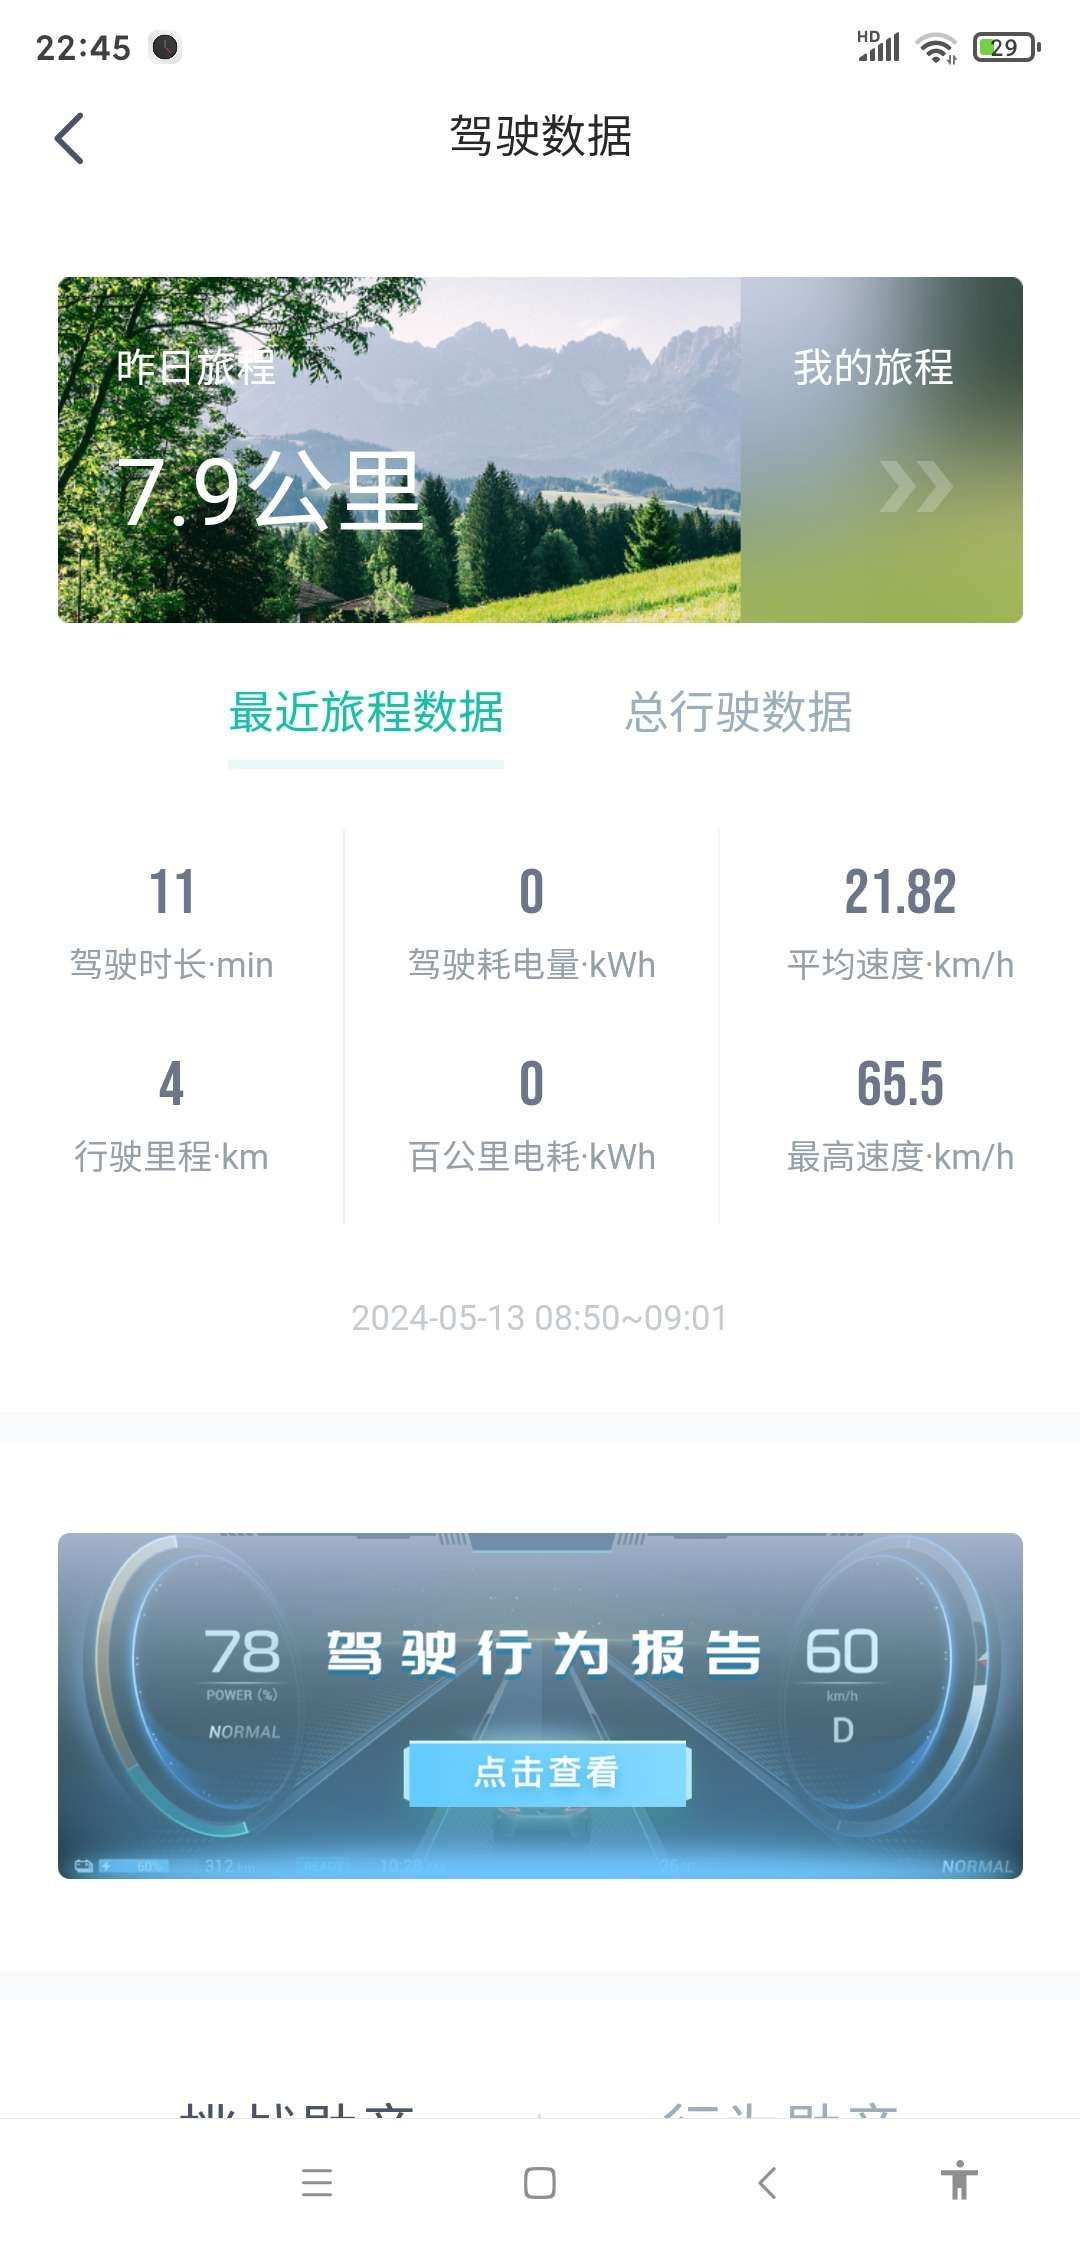 城市：北京

温度：25

车型型号：埃安S PLUS 80

能耗表现：18kWh 

其他备注：上下班代步，时速40公里左右，单踏模式